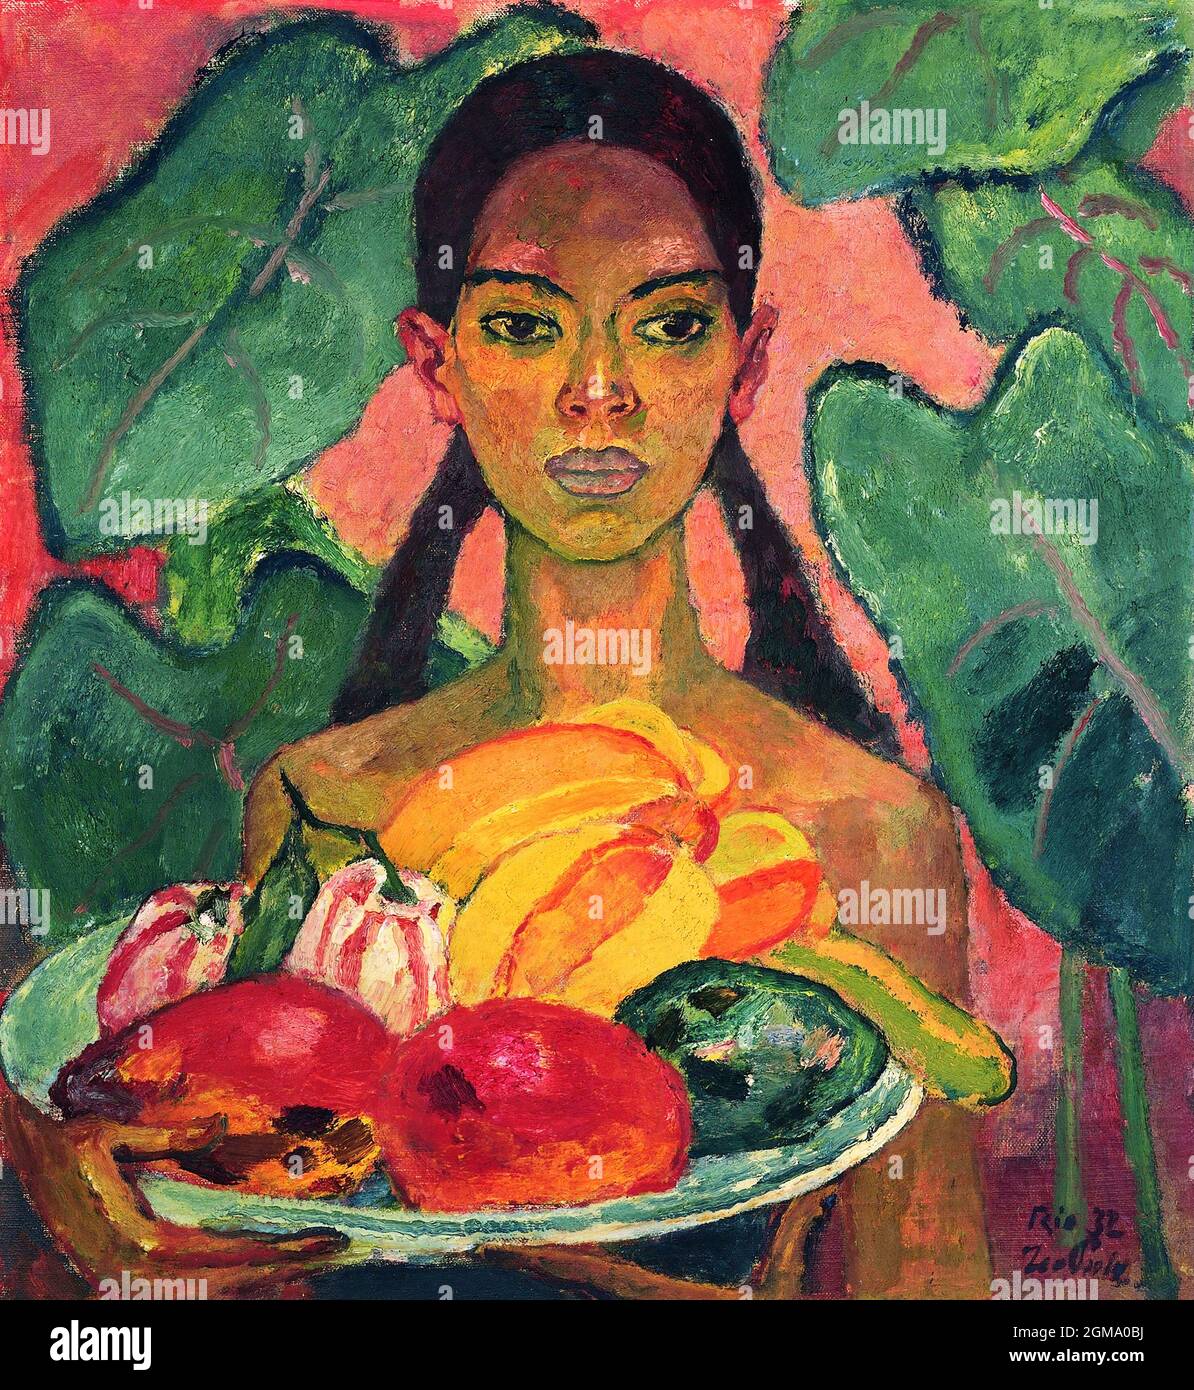 Demi-femme indienne aux fruits (Halbindianerin mit Früchten) par l'artiste tyrolien Leo Putz (1869-1940), huile sur toile, 1932 Banque D'Images